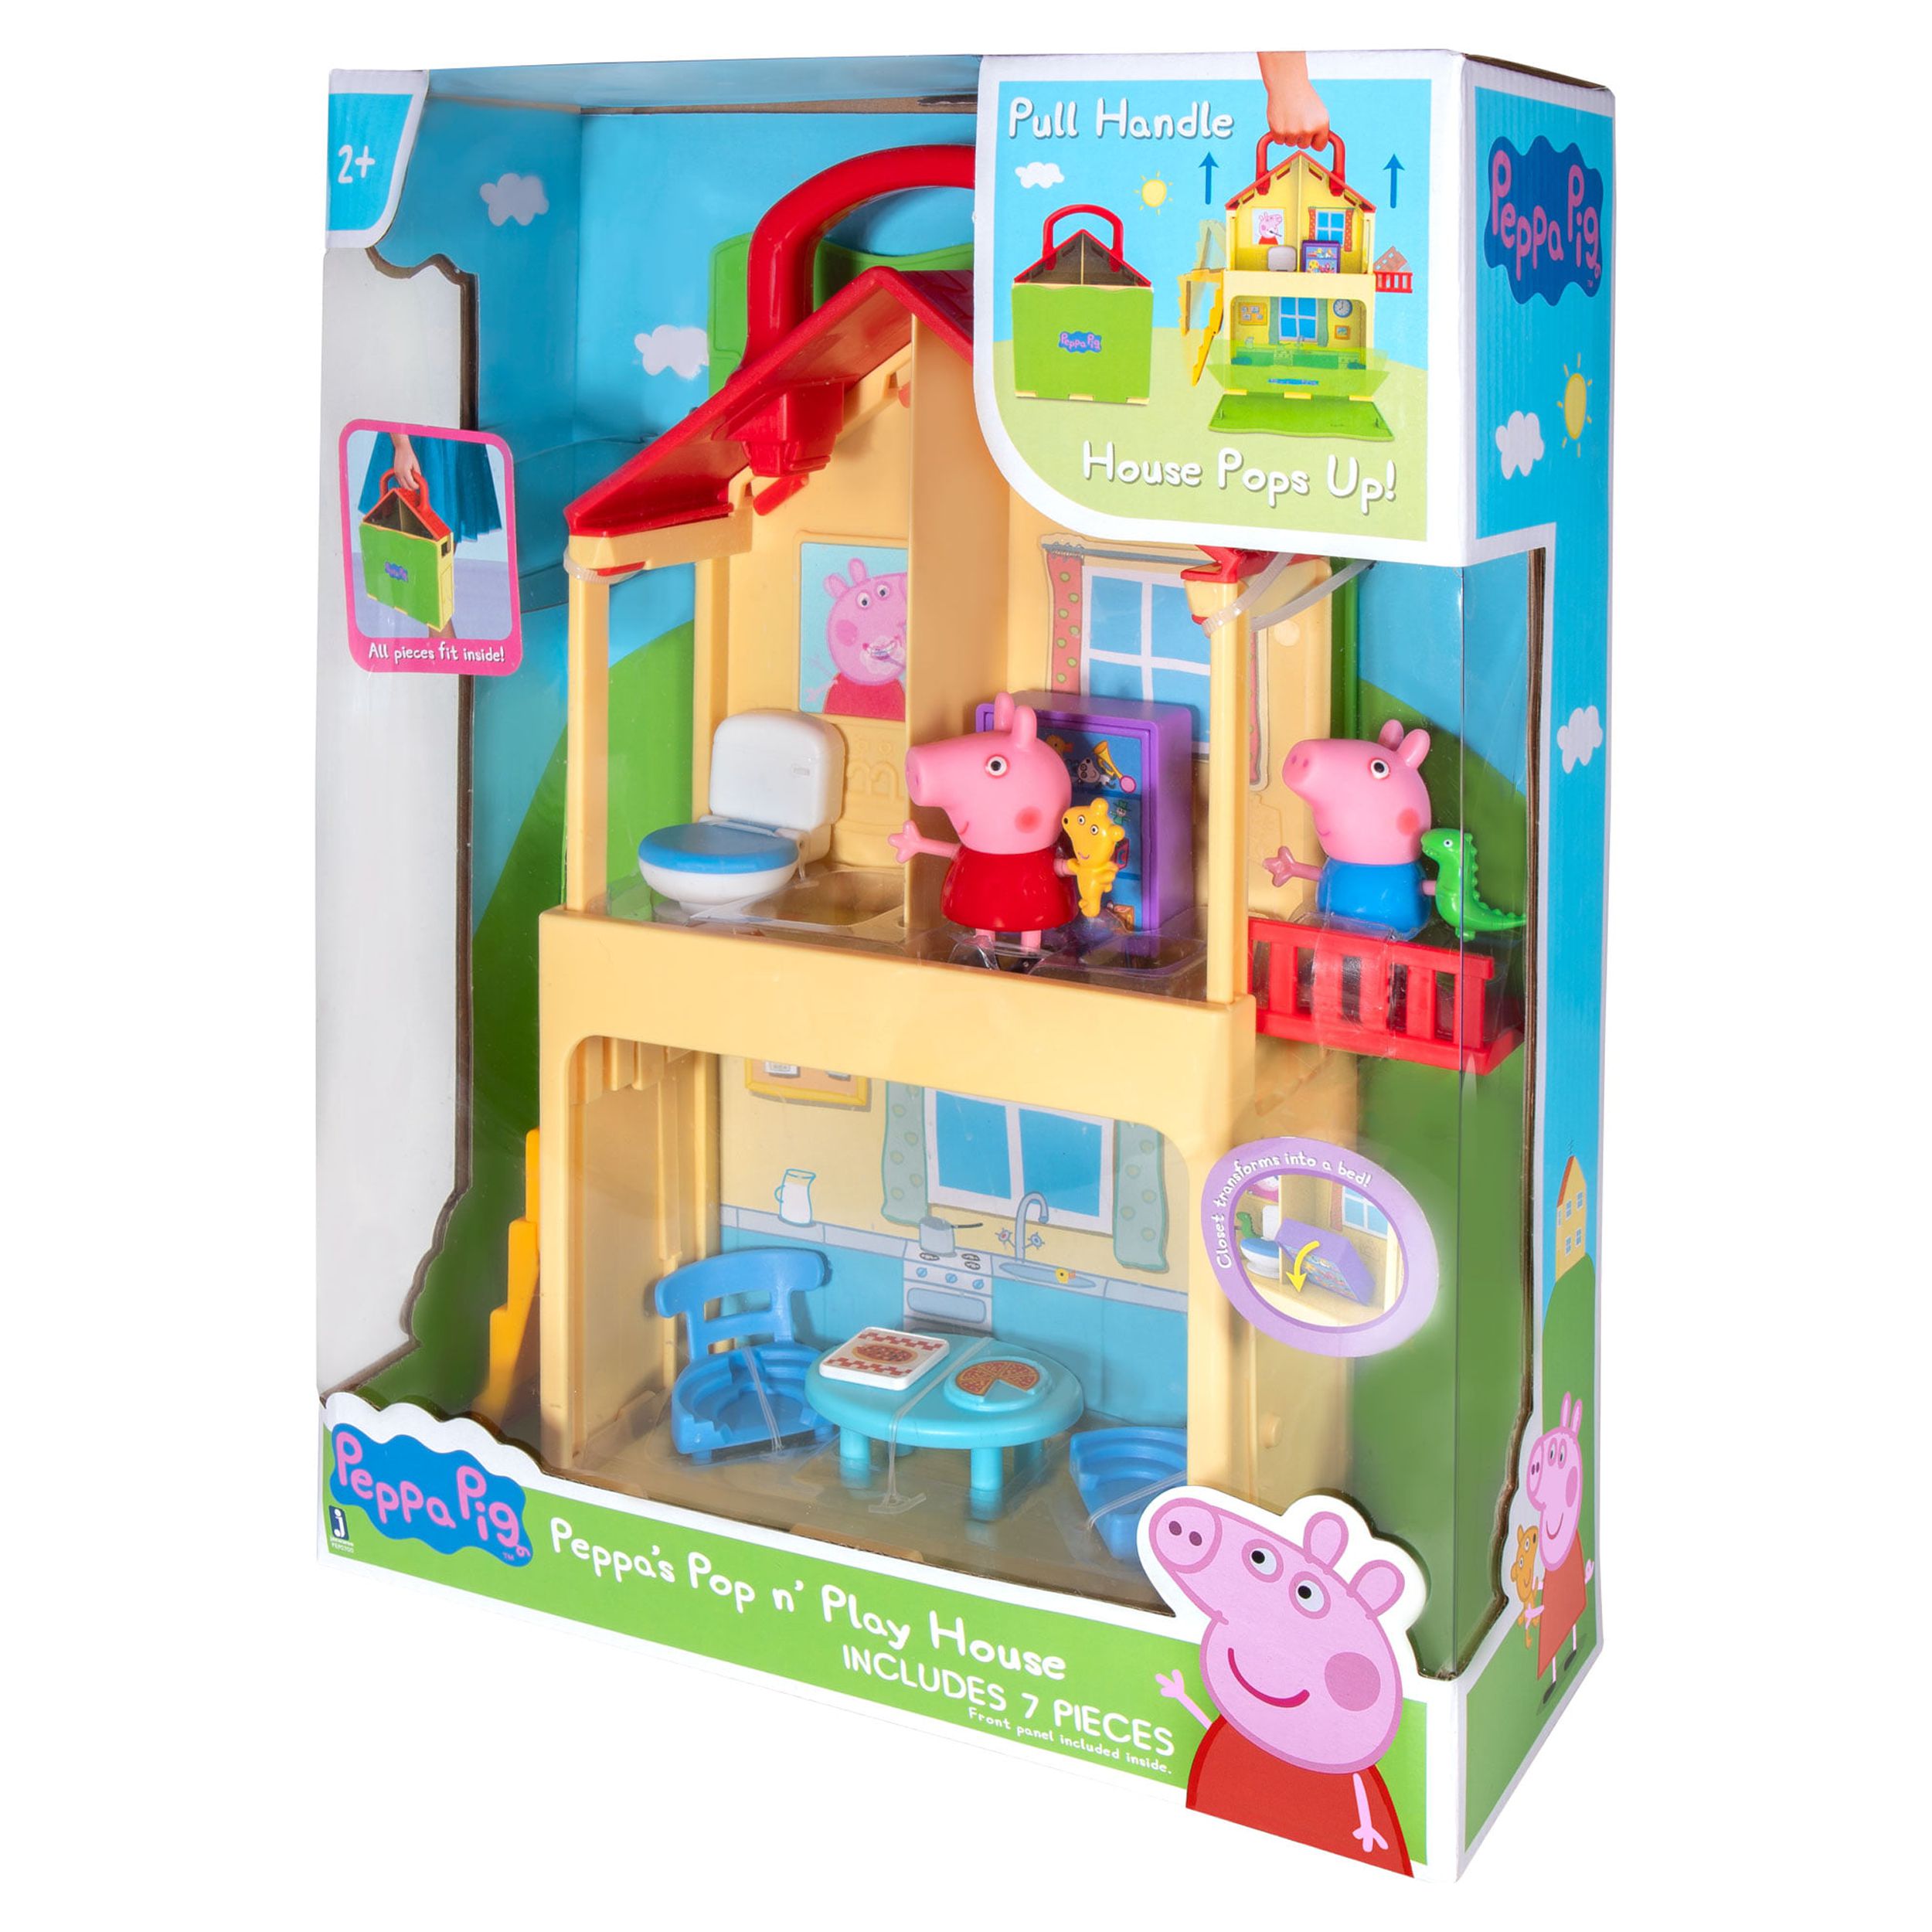 Peppa Pig Pop n’ Play House Playset - image 3 of 11